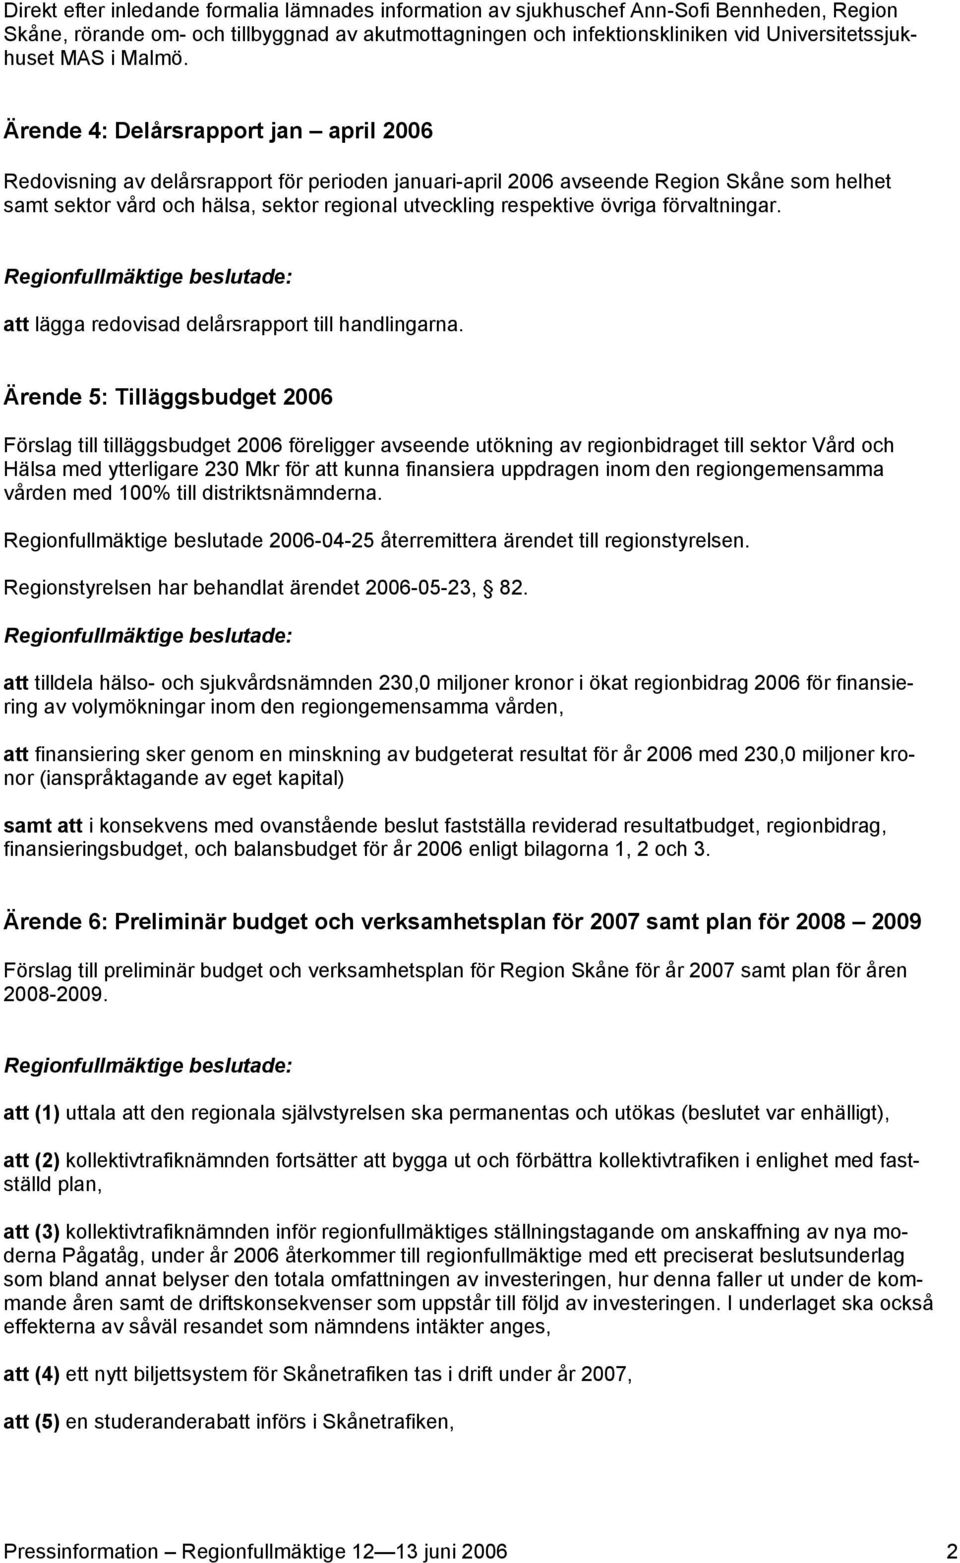 Ärende 4: Delårsrapport jan april 2006 Redovisning av delårsrapport för perioden januari-april 2006 avseende Region Skåne som helhet samt sektor vård och hälsa, sektor regional utveckling respektive